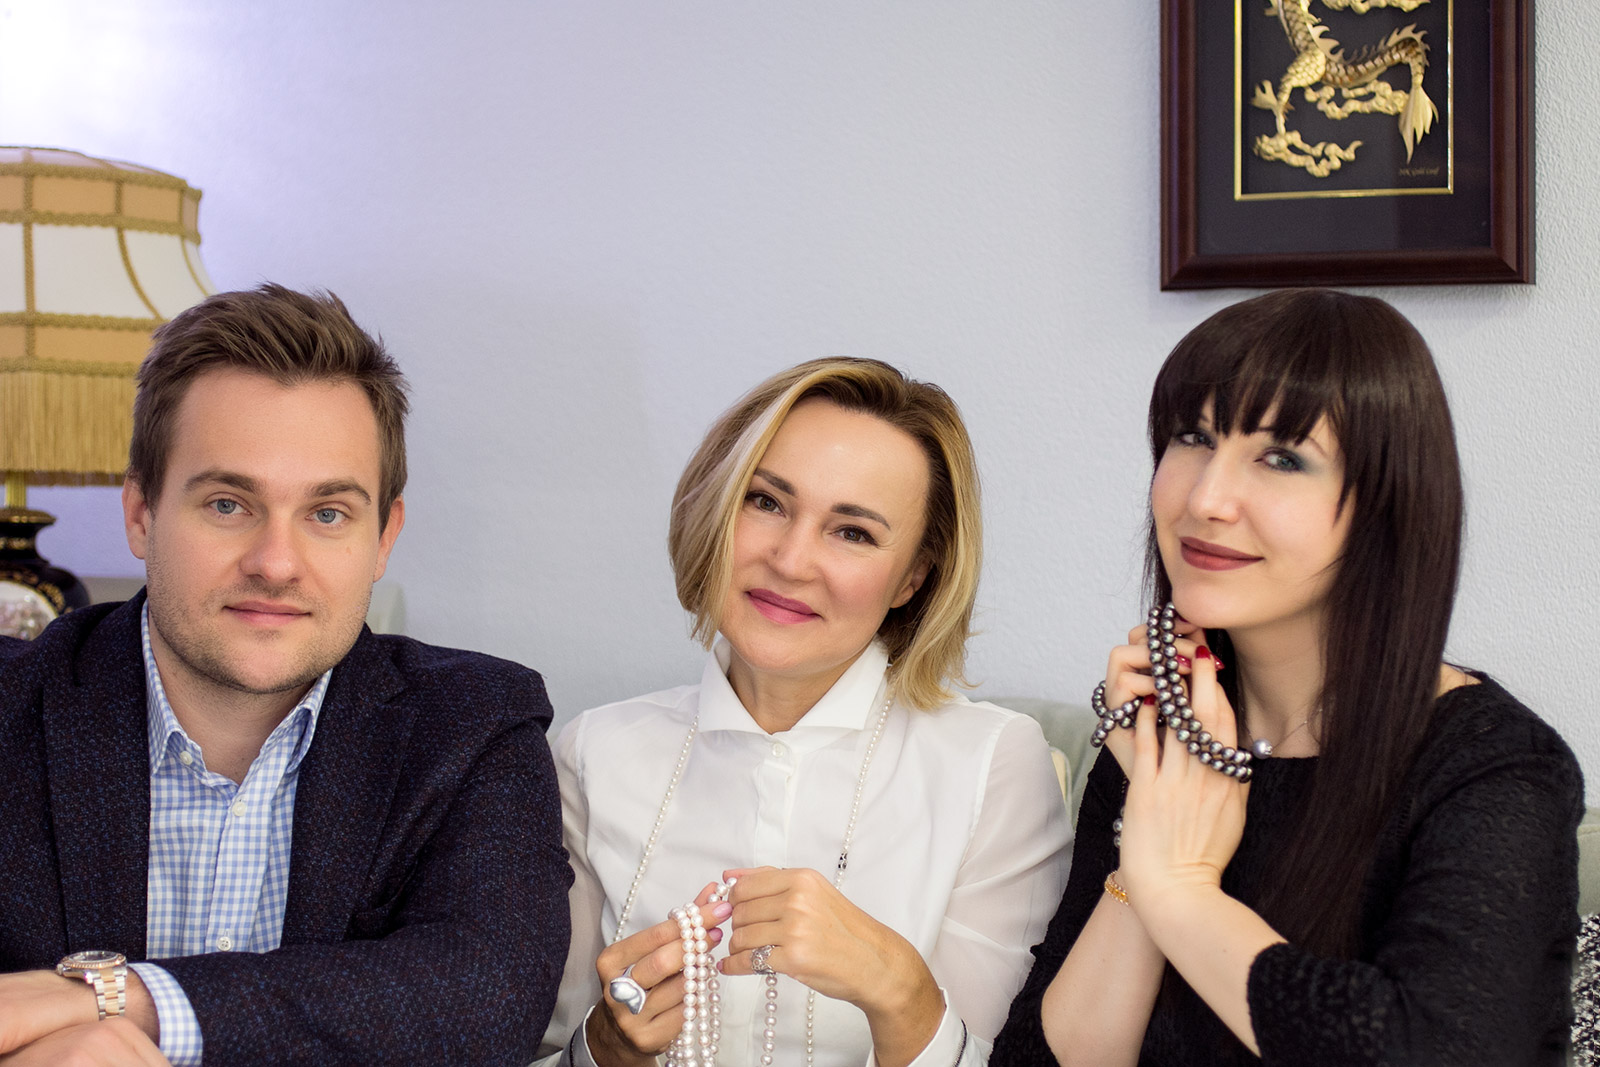 The founders of Podnebesnaya and Podnebesny, Ilya Podnebesny and Ksenia Podnebesnaya with Katerina Perez